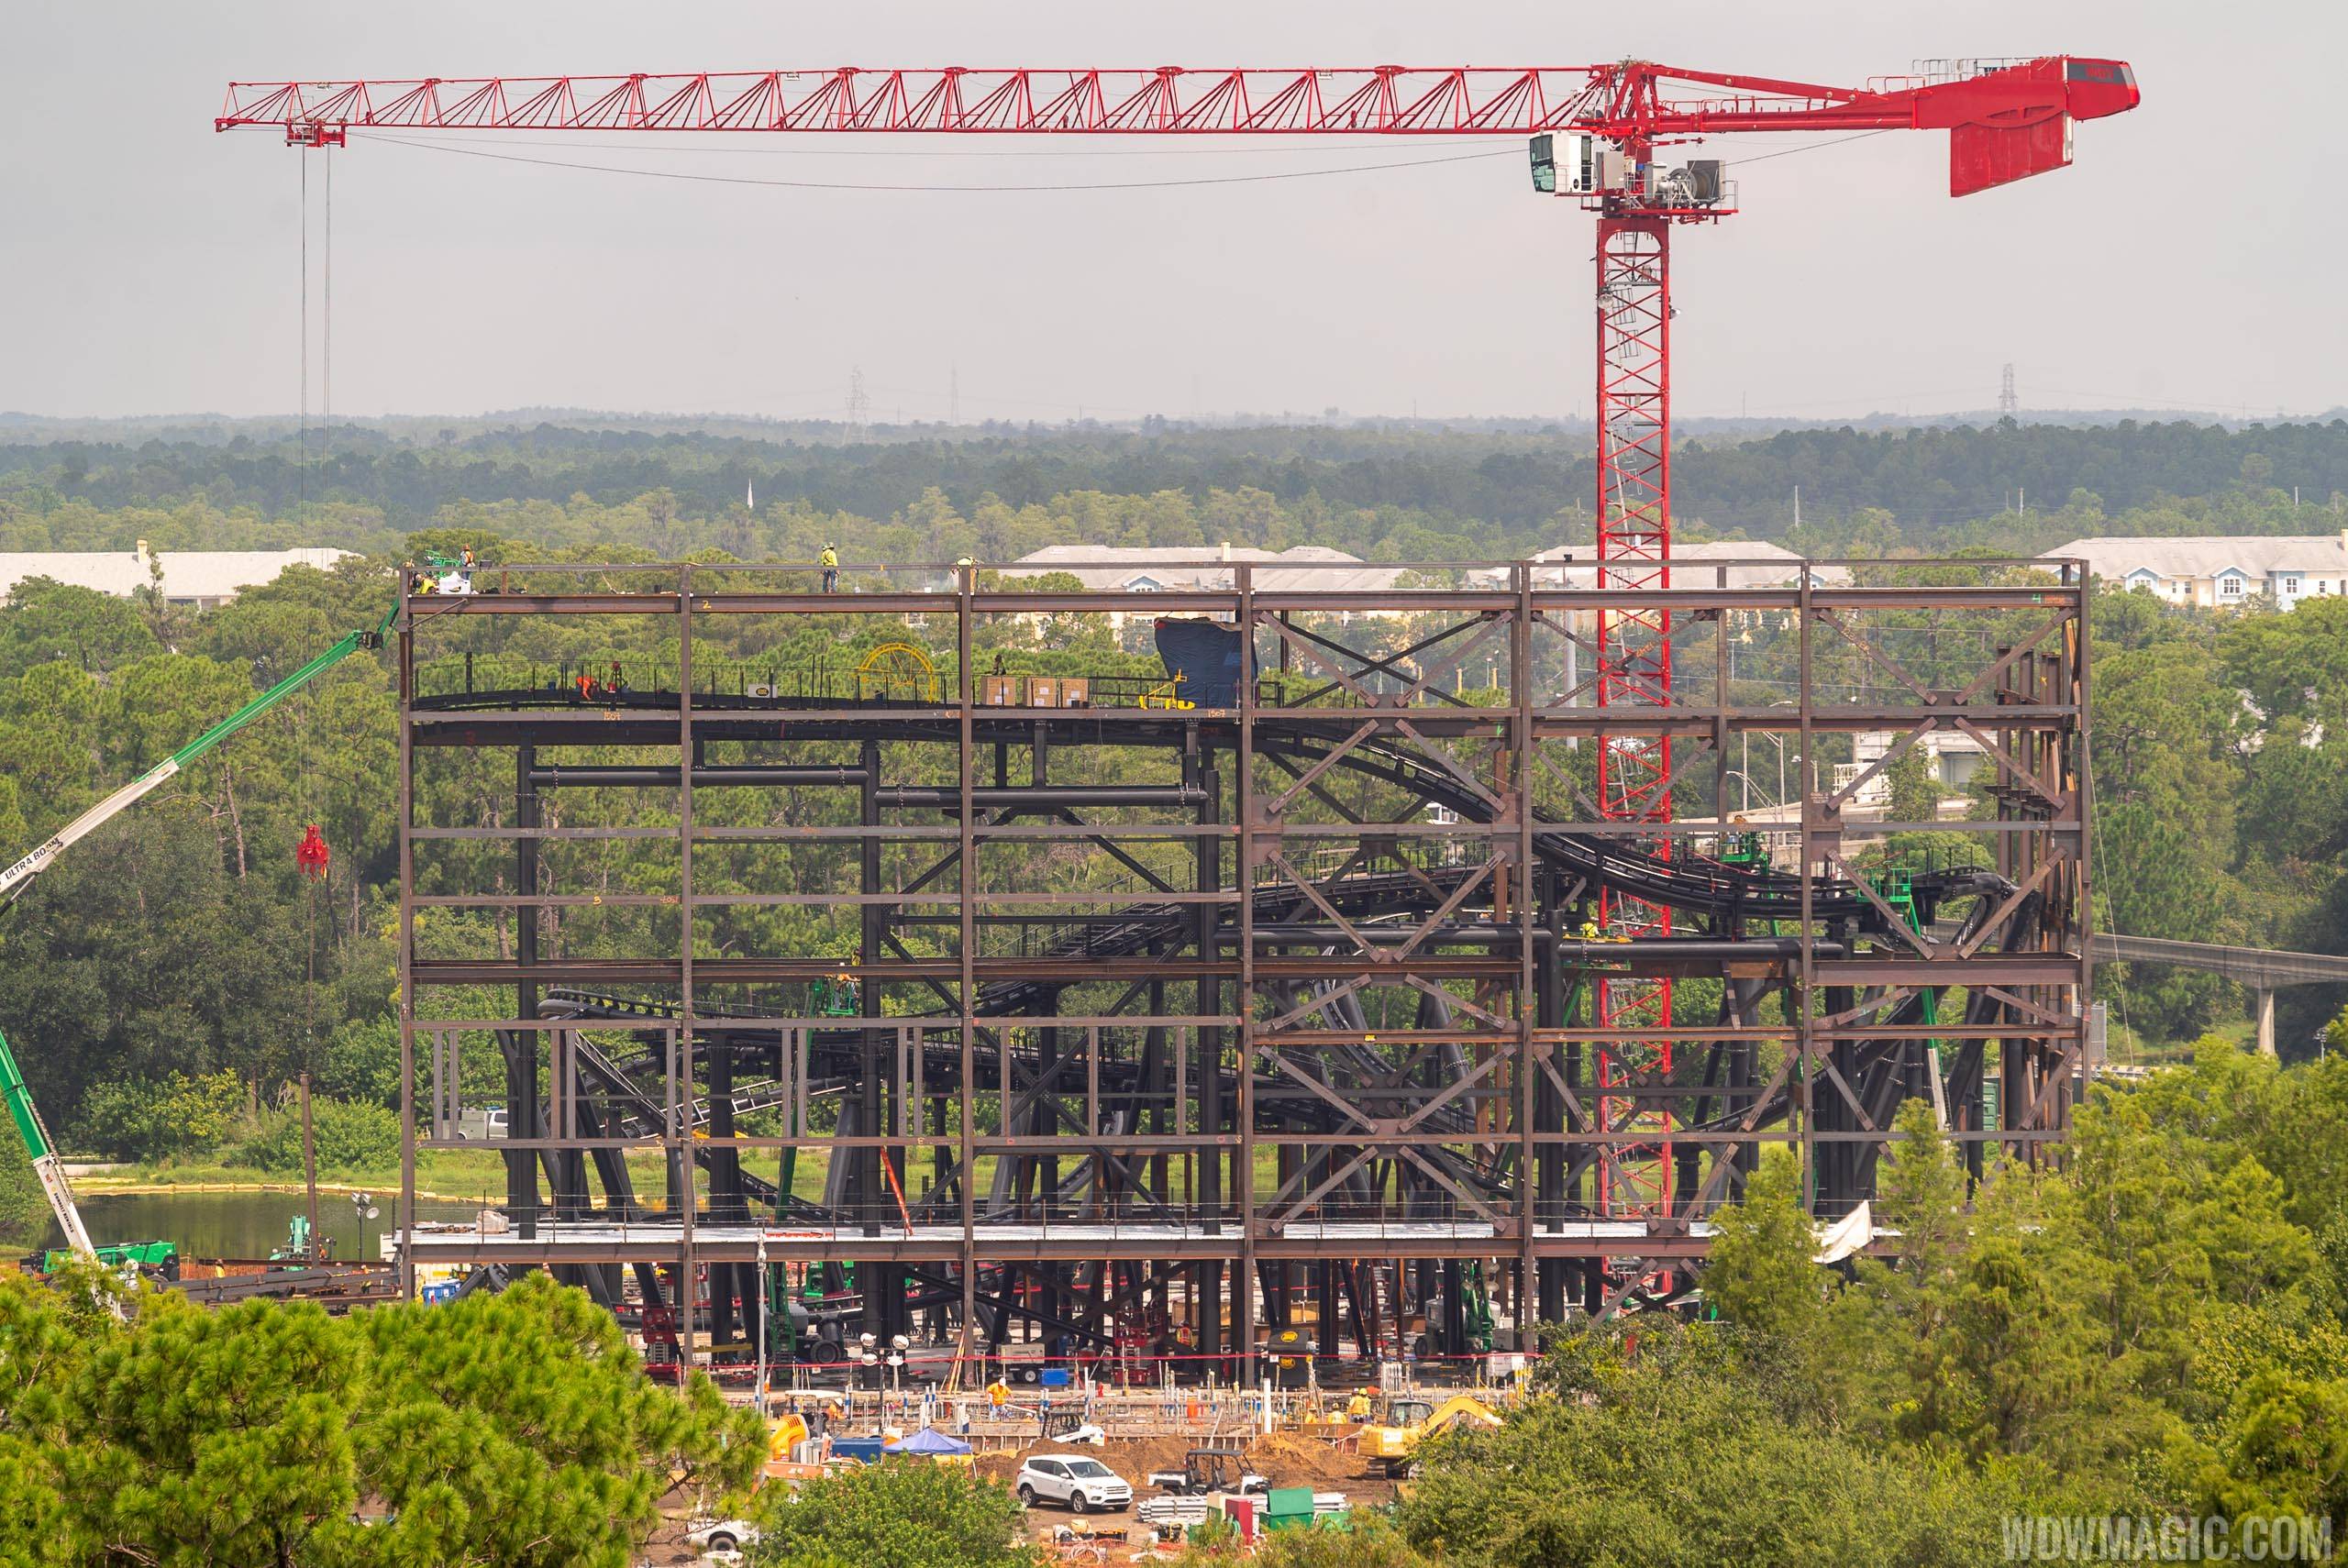 Tron construction site - August 2019